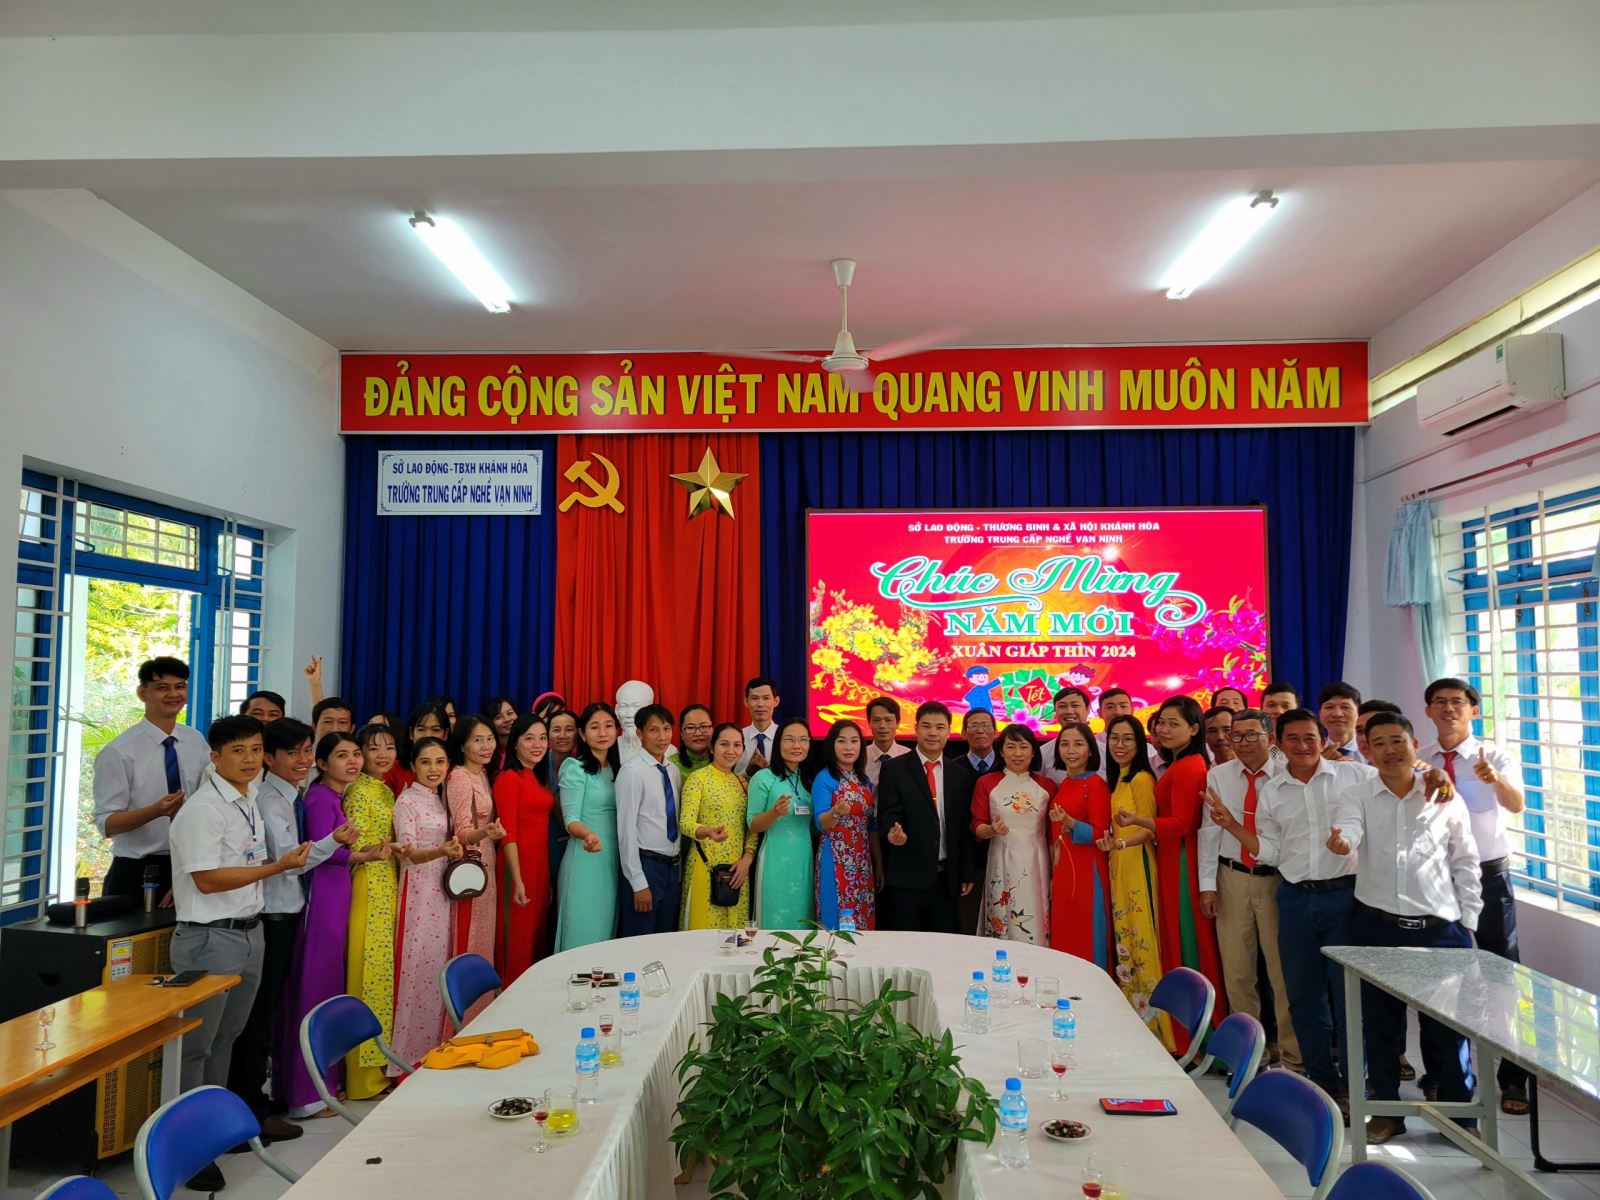 Lãnh đạo Trường Trung cấp nghề Vạn Ninh gặp mặt chúc tết viên chức, người lao động và hưởng ứng Tết trồng cây xuân Giáp thìn 2024